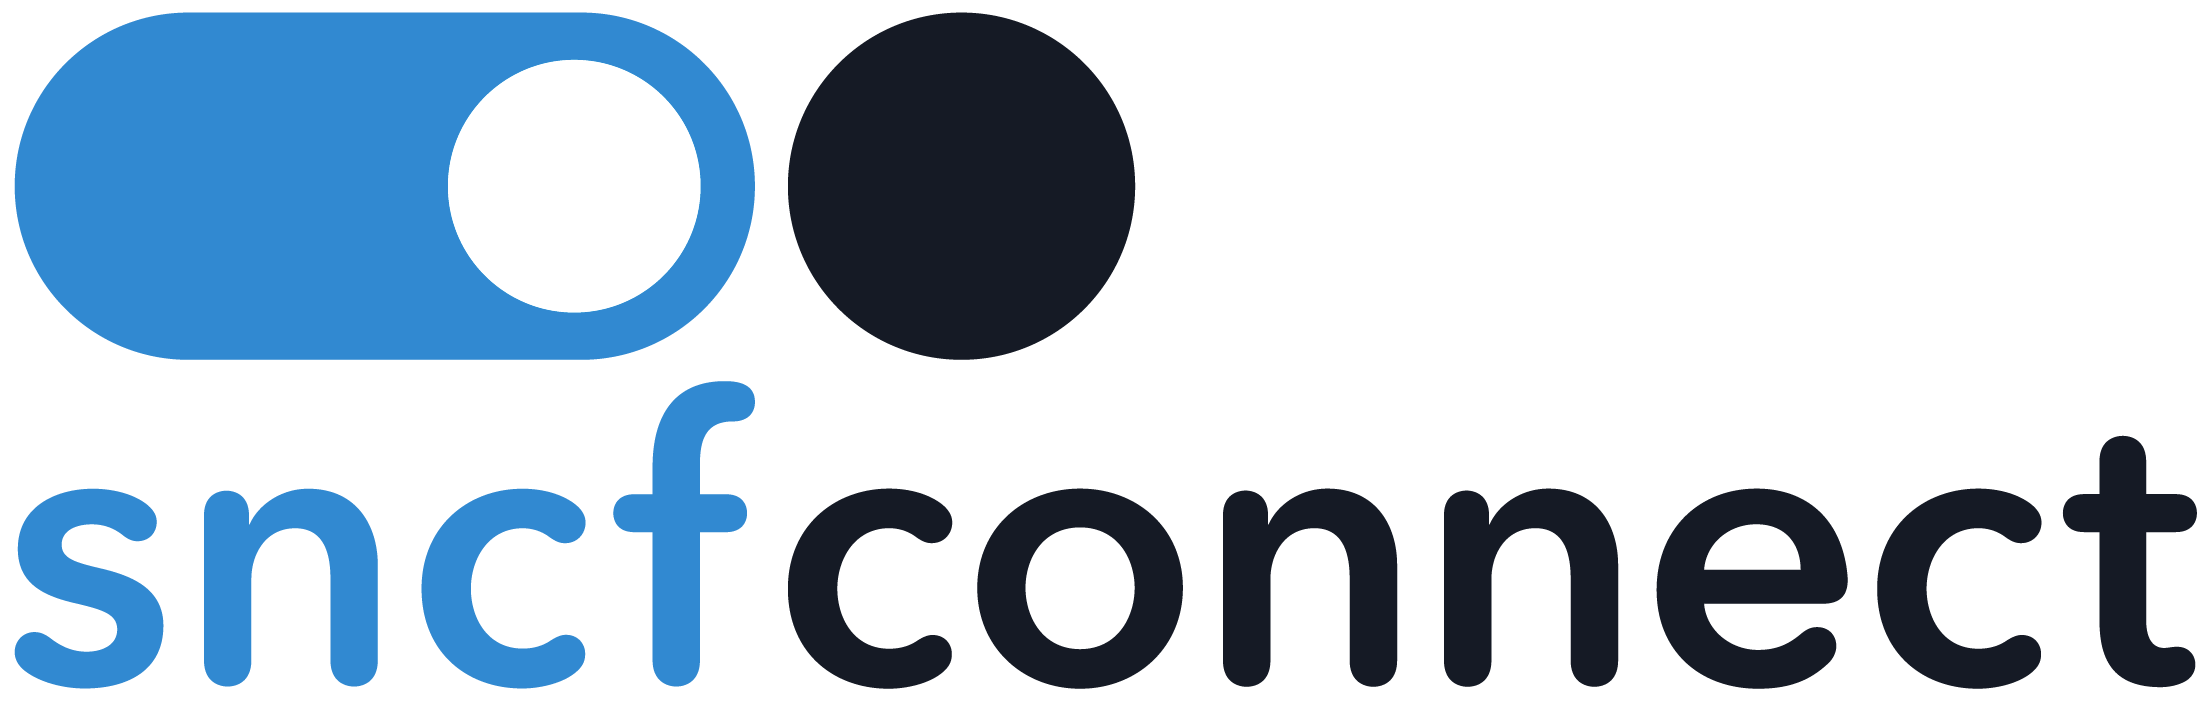 OUI.sncf-logo